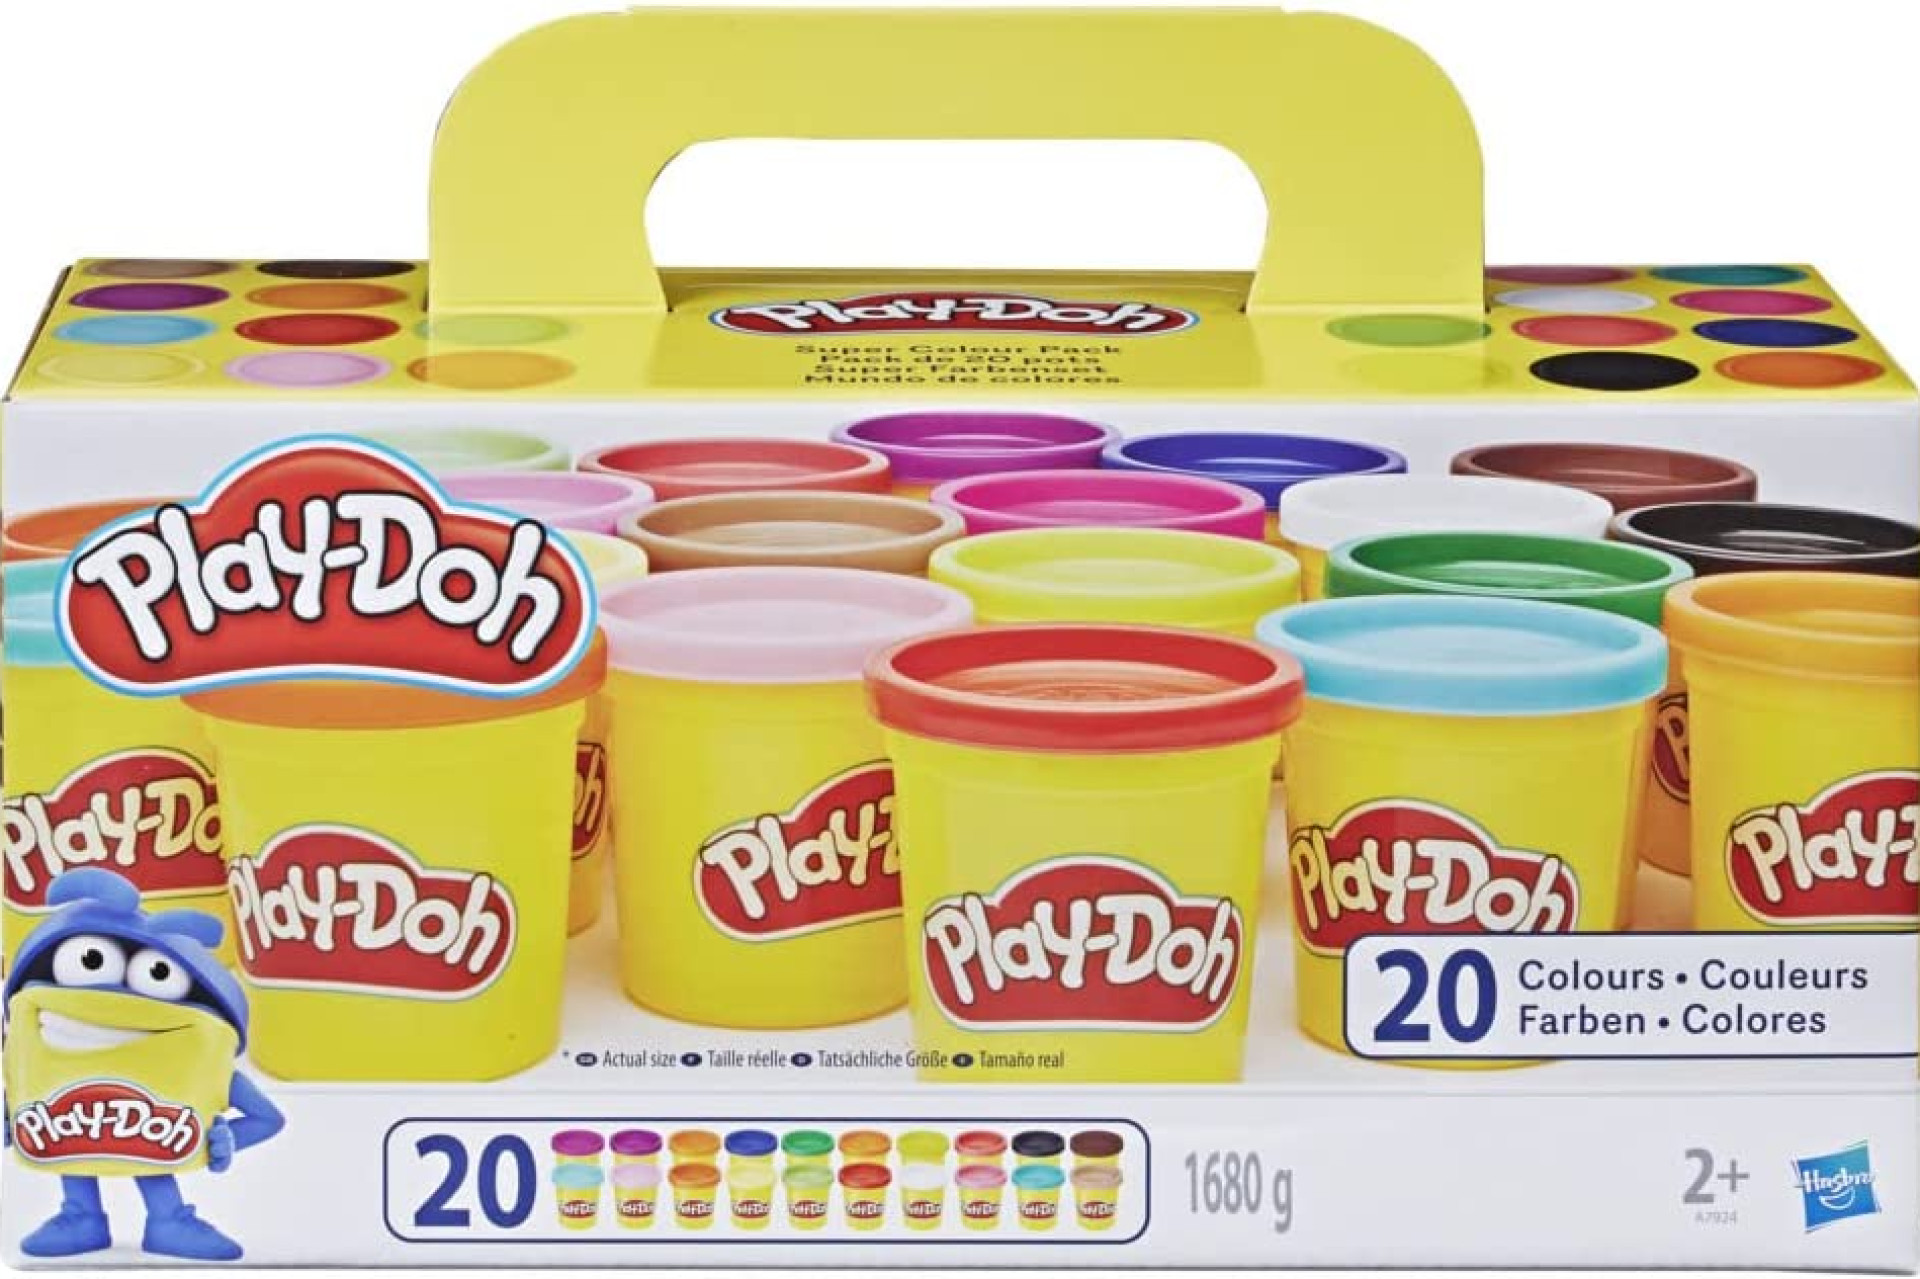 Acheter Play-Doh, 20 Pots de Pate A Modeler